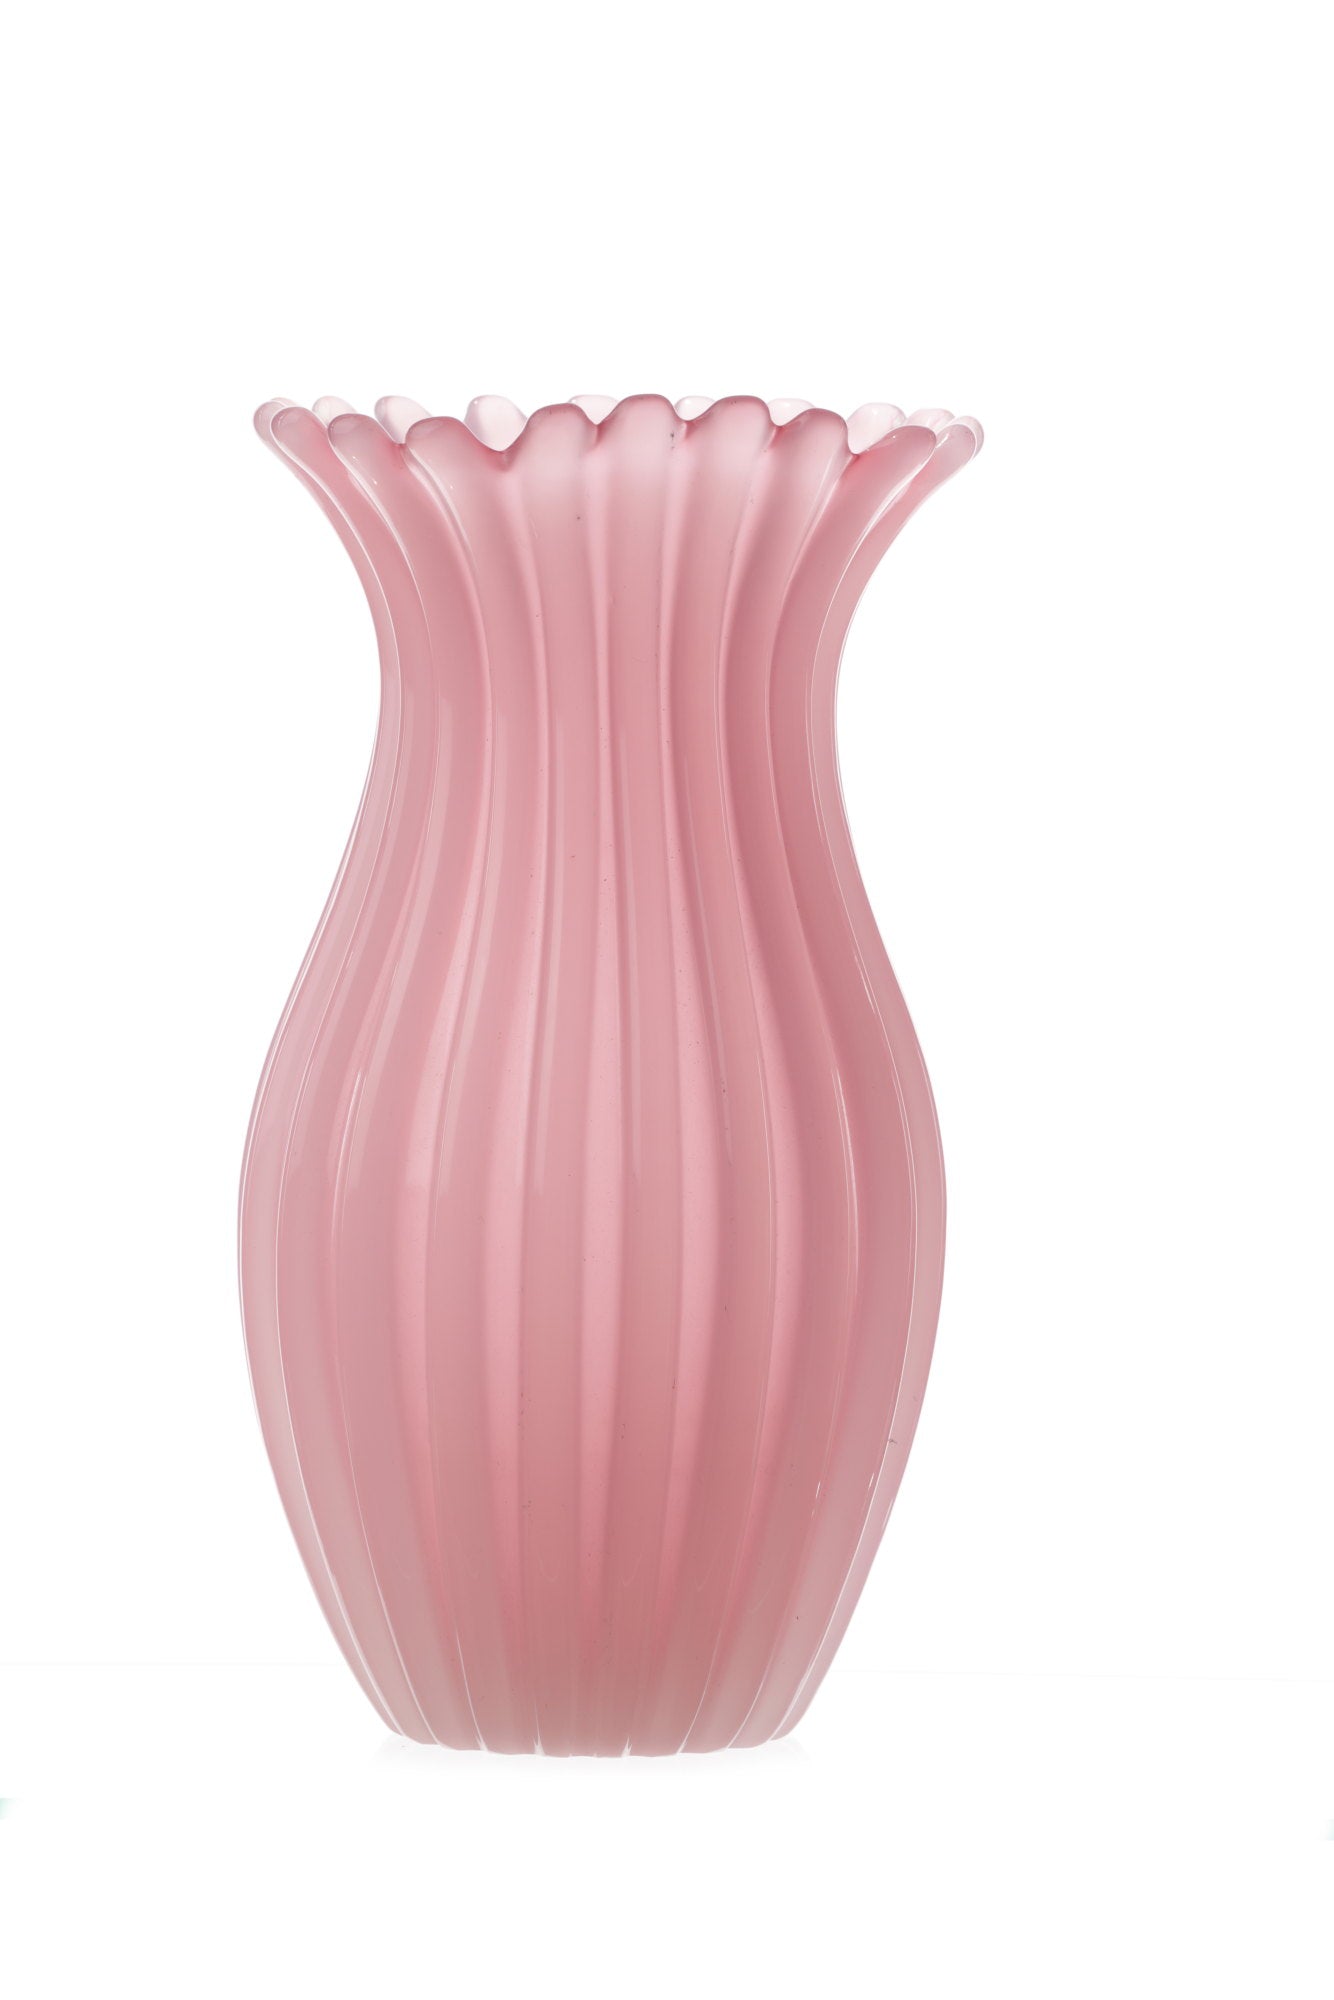 Vaso cristallo rosa costolato –